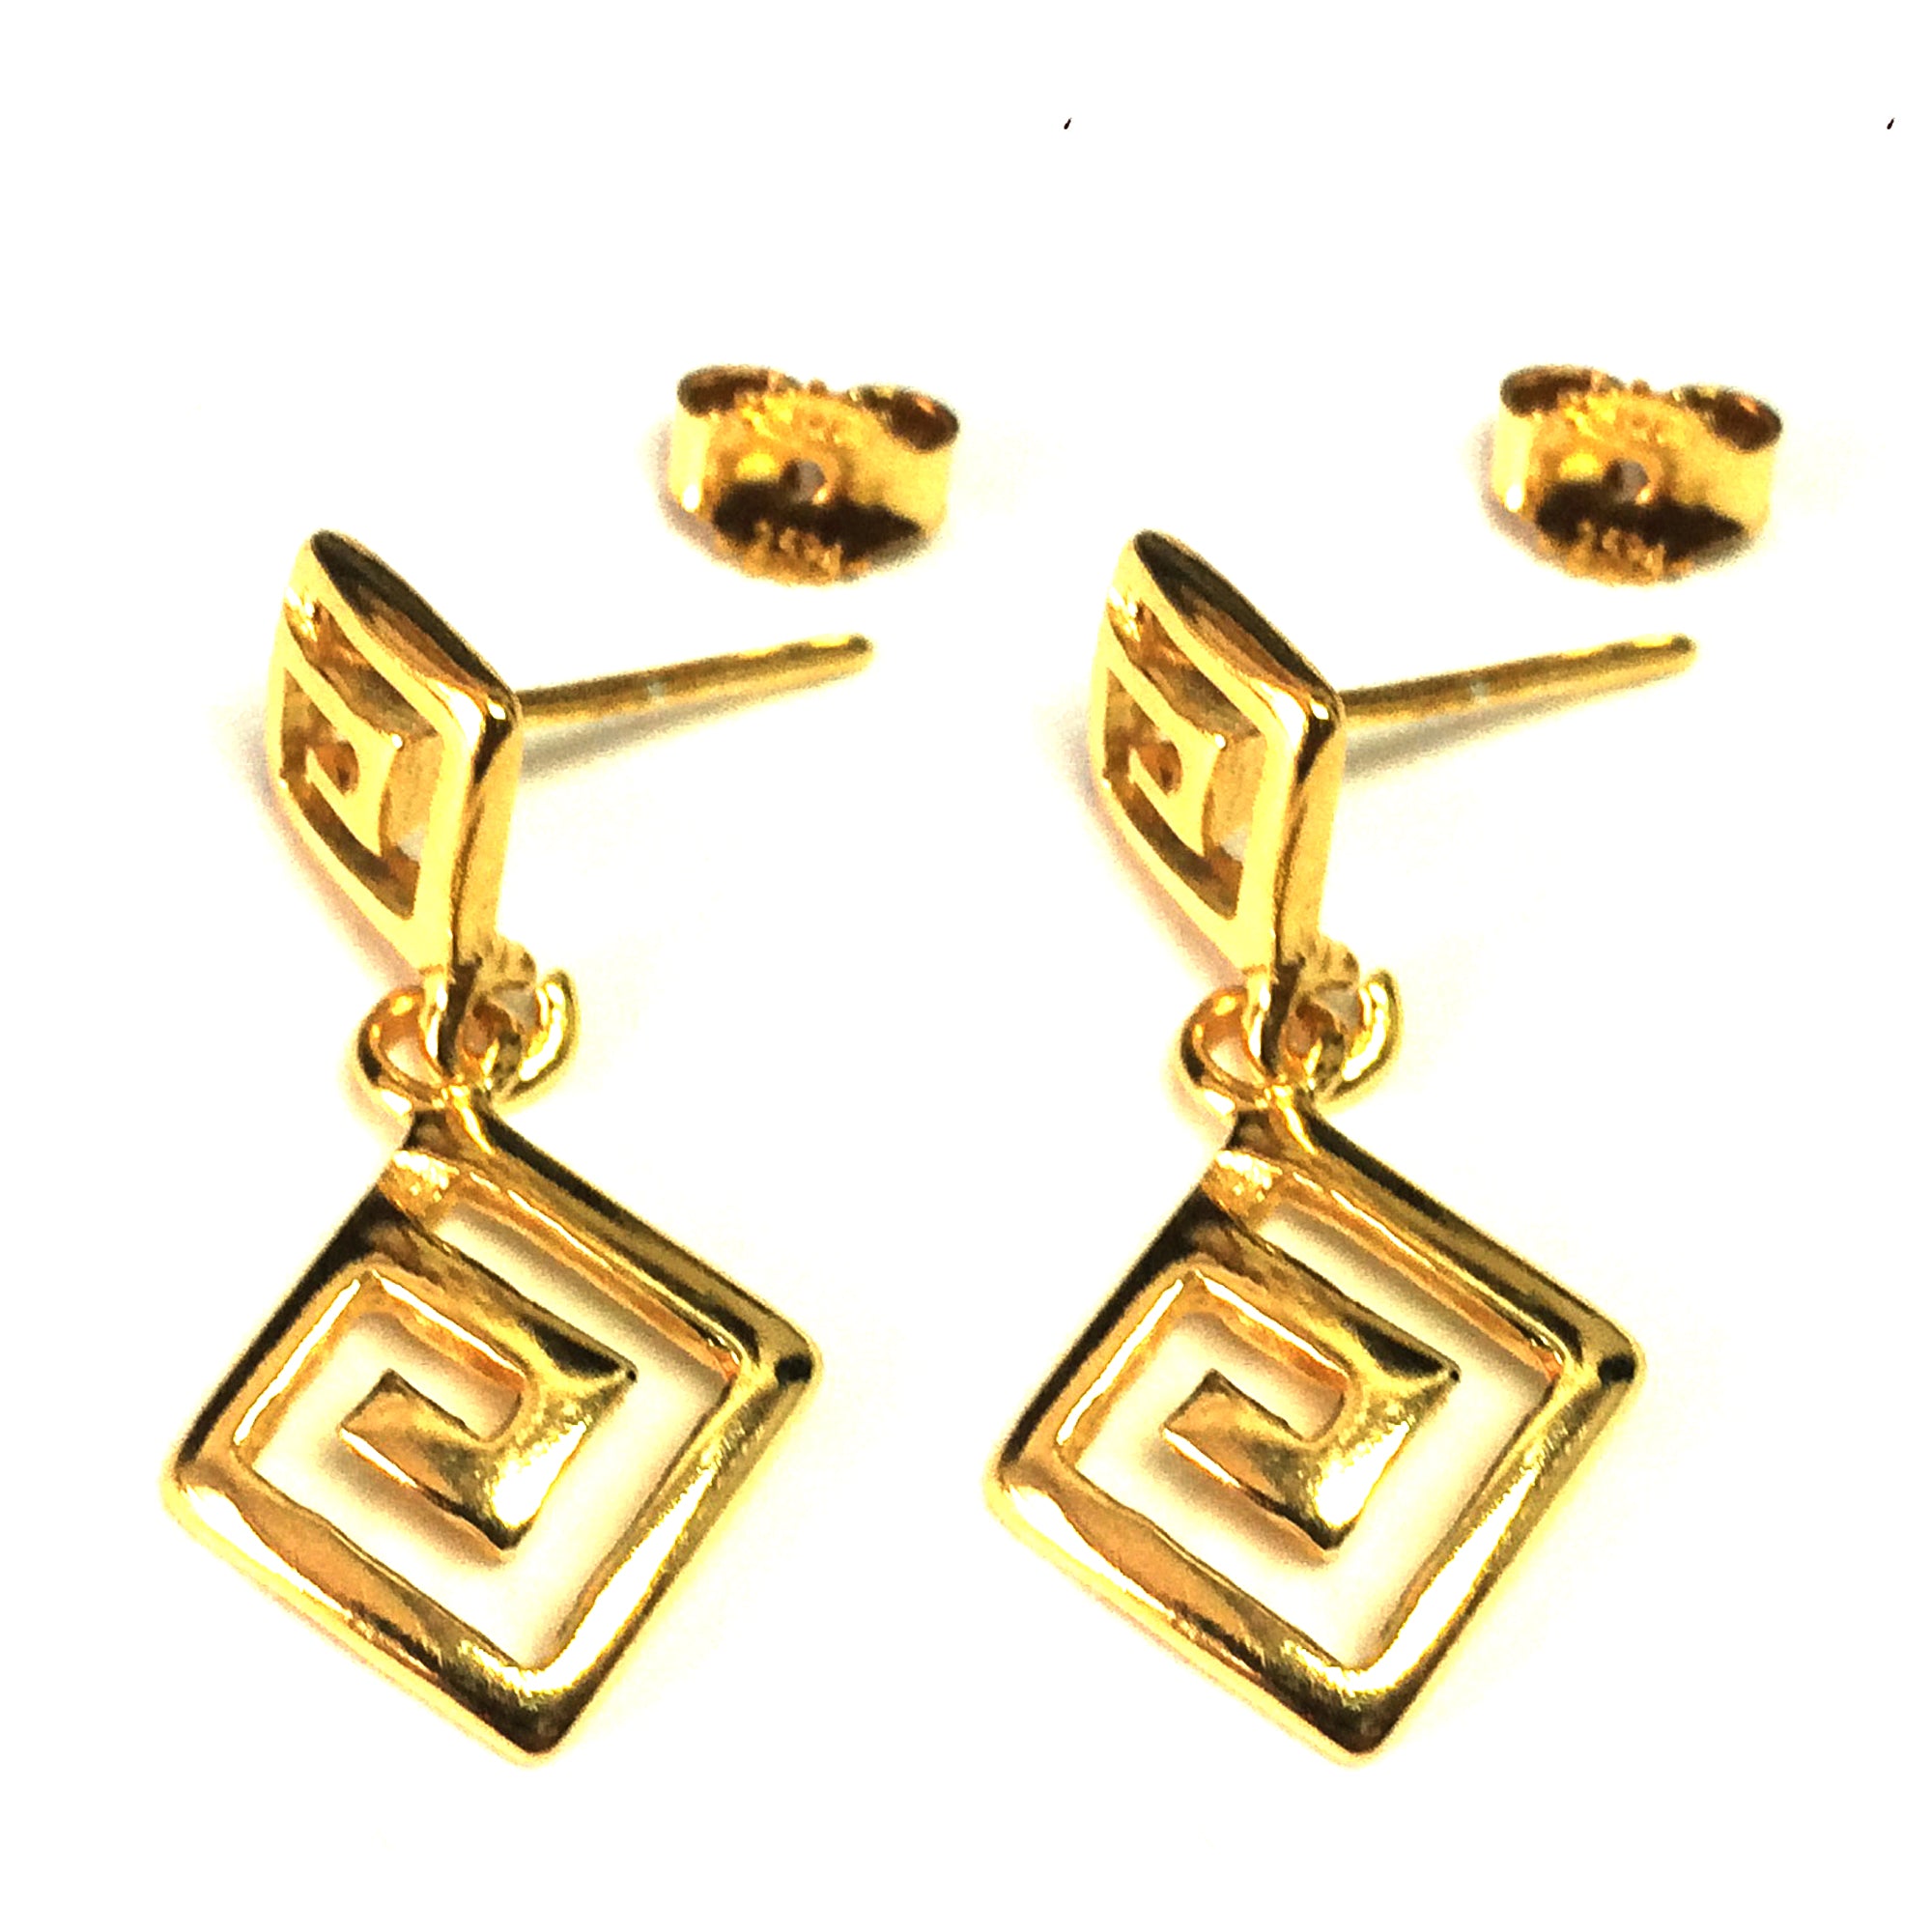 Sterlingsilver 18 karat guld överlägg grekisk nyckel Dangle örhängen, 12 x 27 mm fina designersmycken för män och kvinnor